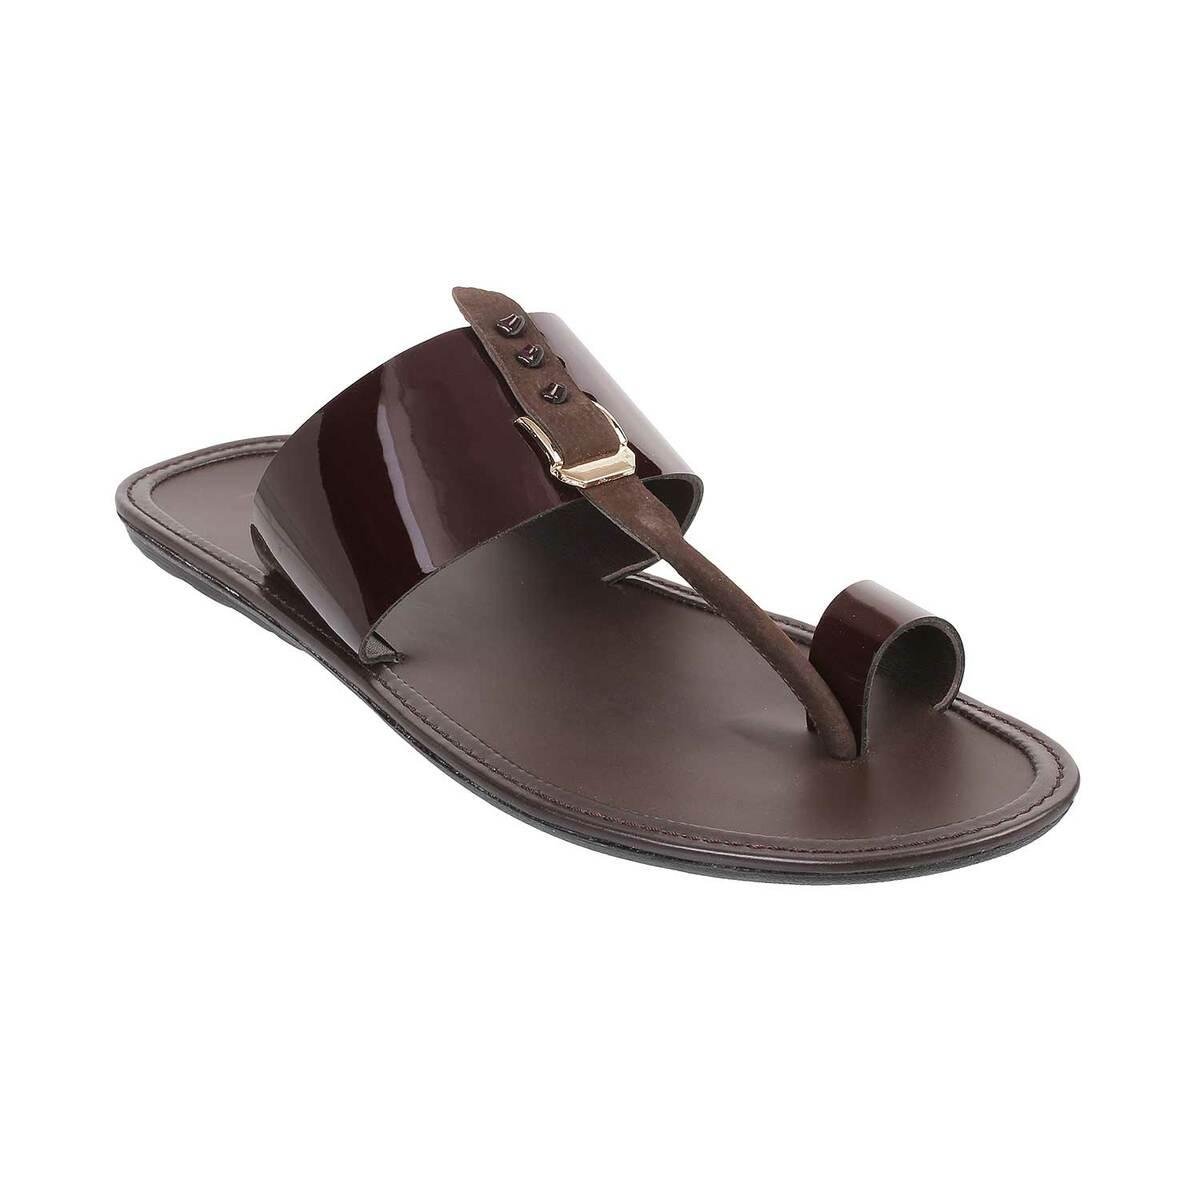 Men Maroon Casual Slippers Online | SKU: 16-9902-44-40-Metro Shoes